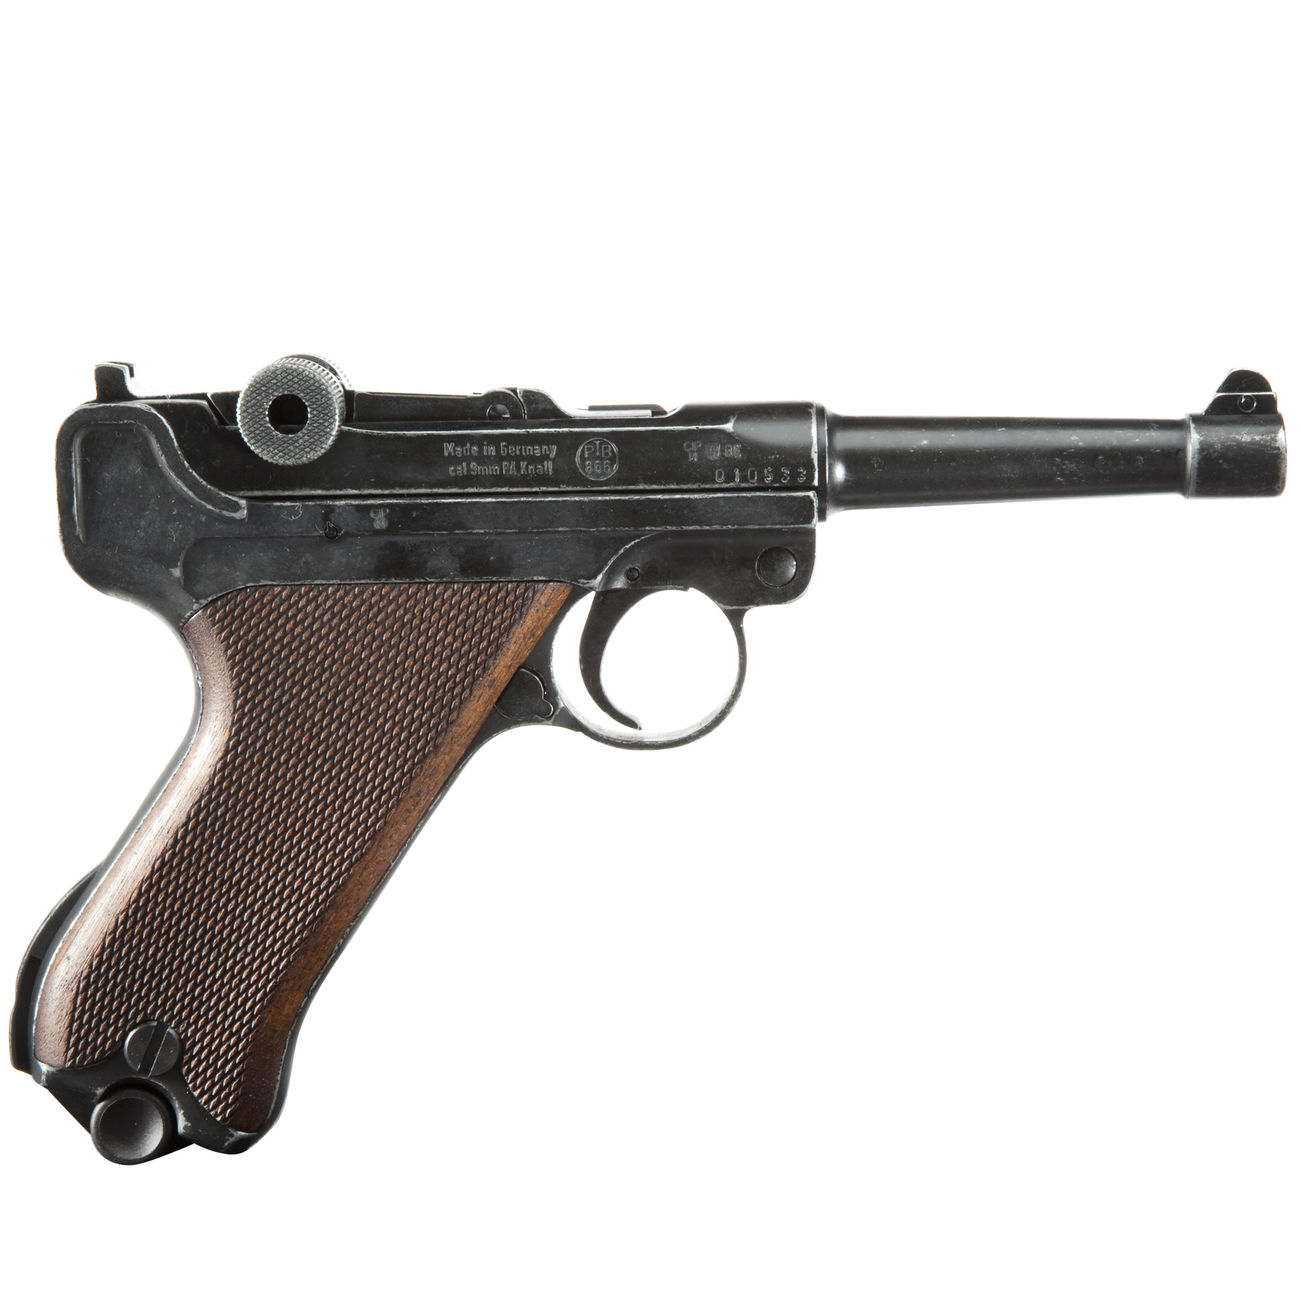 ME Modell P08 Parabellum Schreckschuss Pistole 9 mm P.A.K. antik finish WWII Bild 1